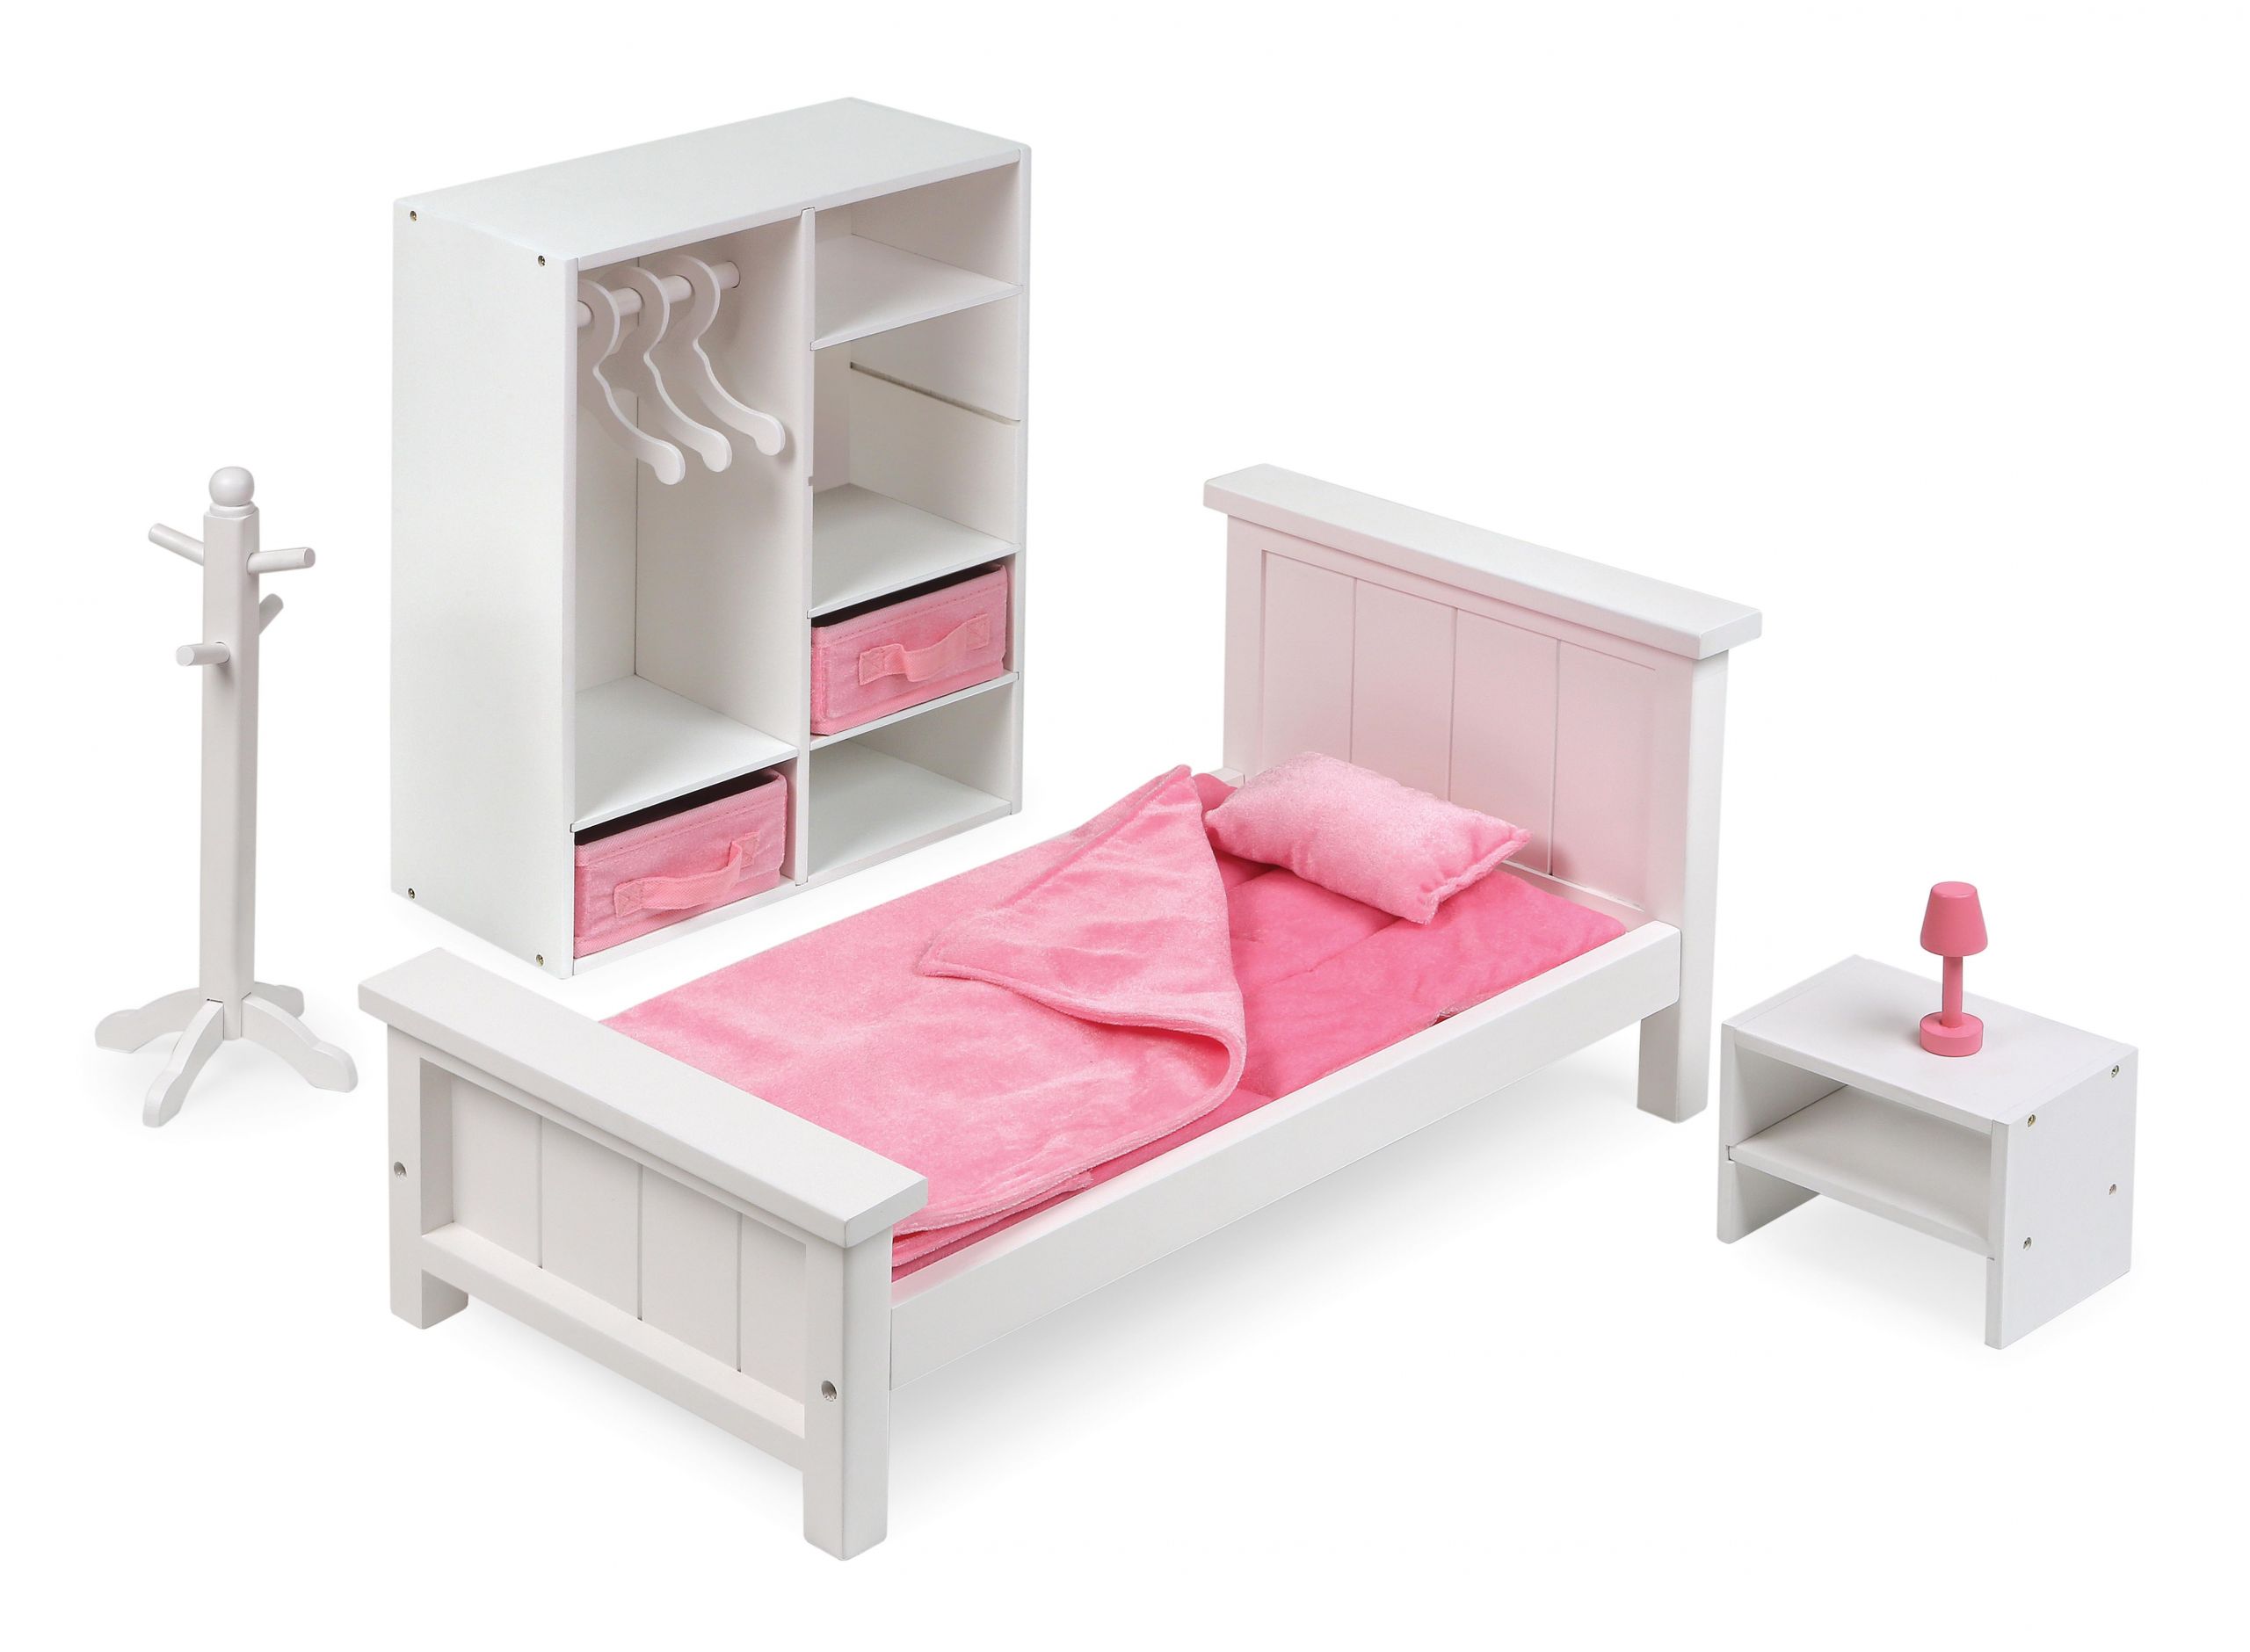 Walmart Girl Bedroom Sets
 Badger Basket Bedroom Furniture Set for 18 inch Dolls